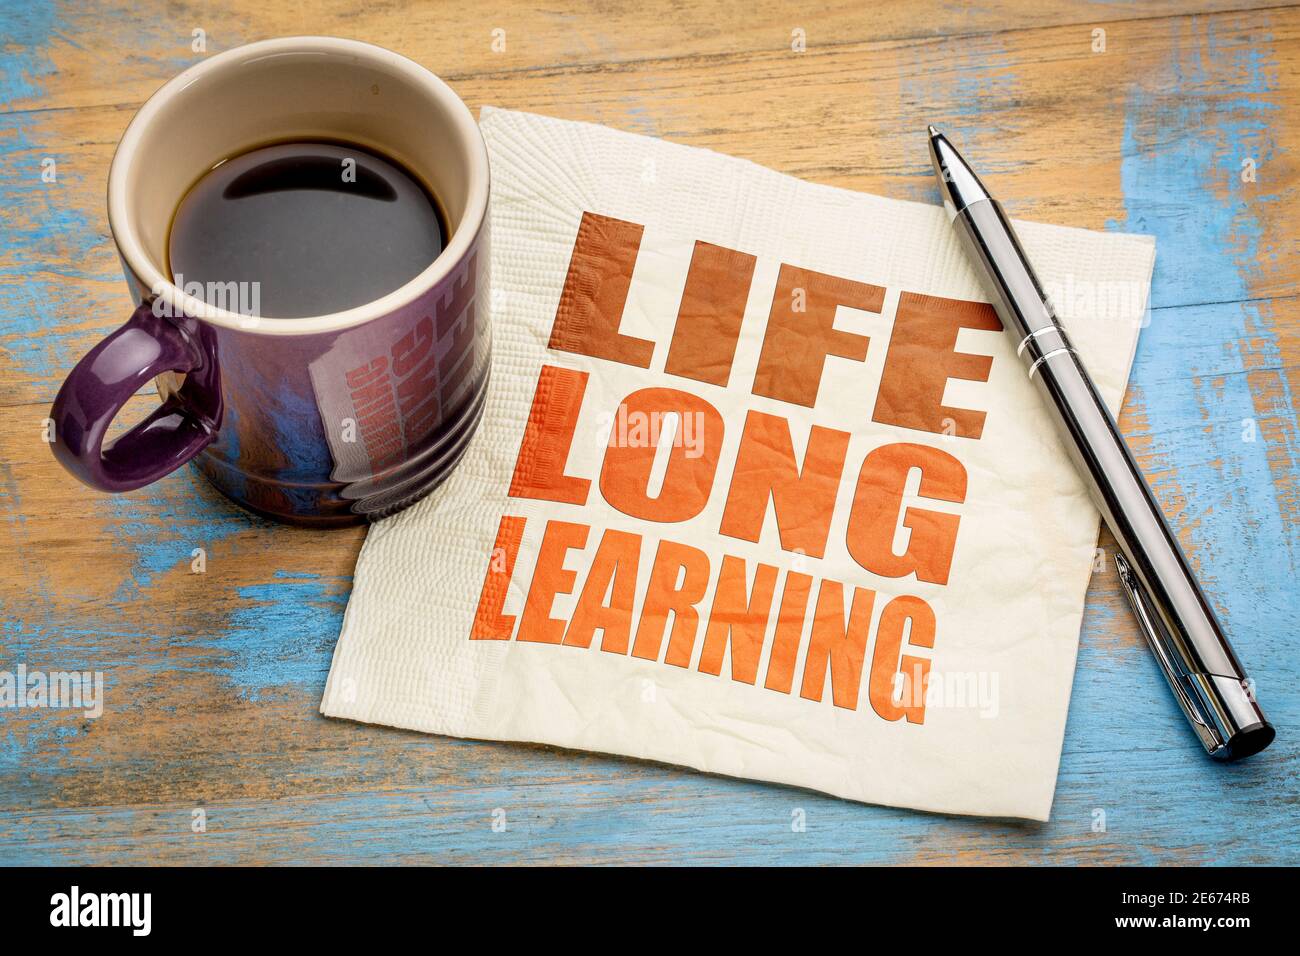 concetto di apprendimento permanente - astratto di parole su un tovagliolo con una tazza di caffè espresso, istruzione, stile di vita e sviluppo personale Foto Stock